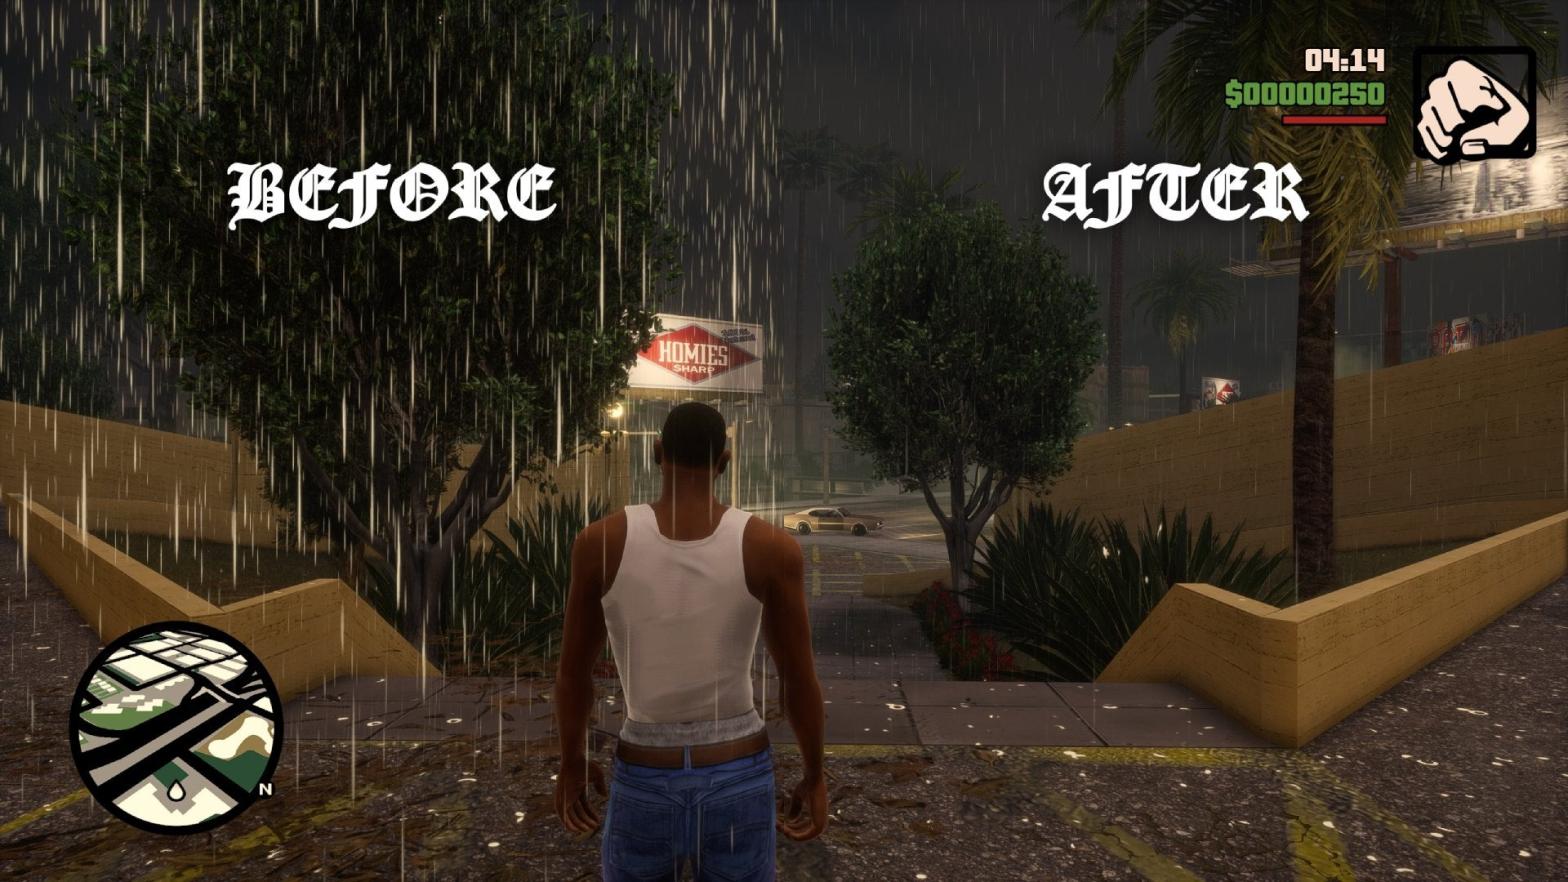 Screenshot: Rockstar / GTA Trilogy Mods